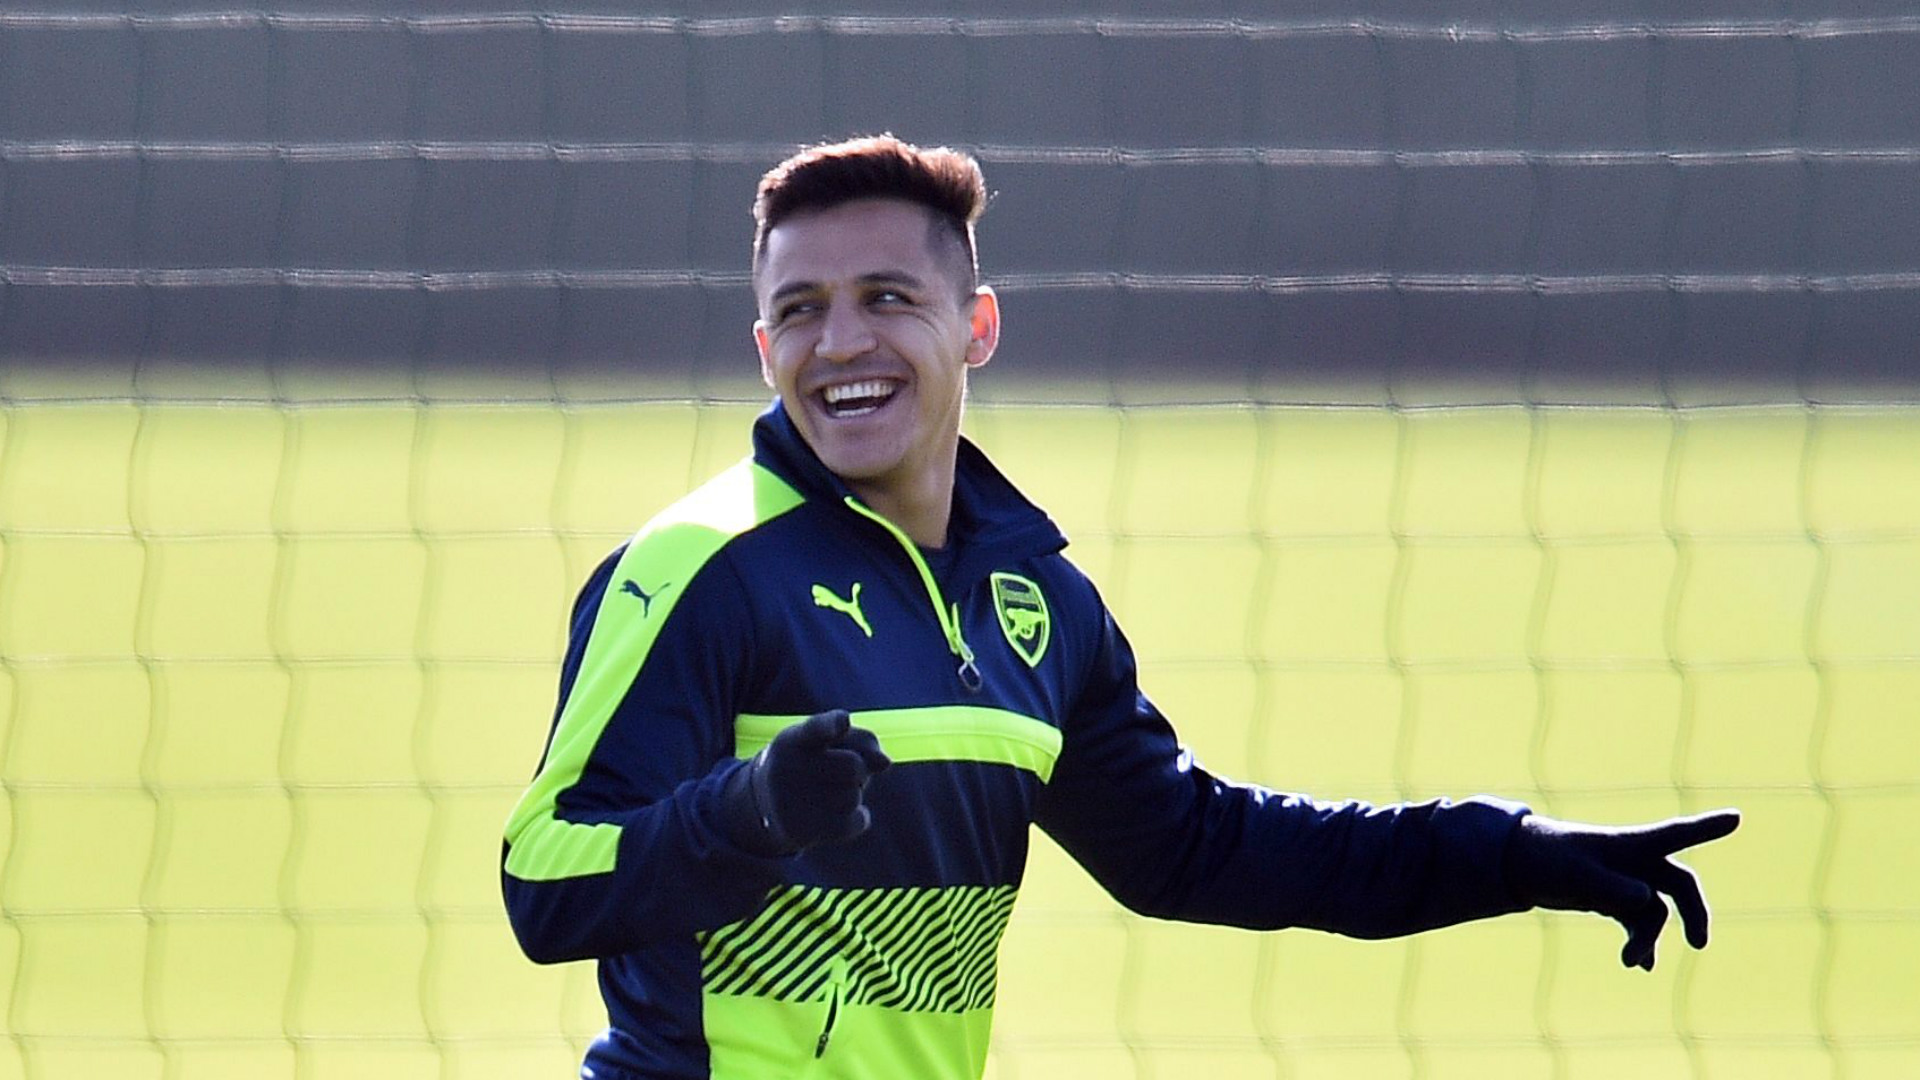 XÁC NHẬN: Arsenal từ chối bán Sanchez cho Man City - Bóng Đá